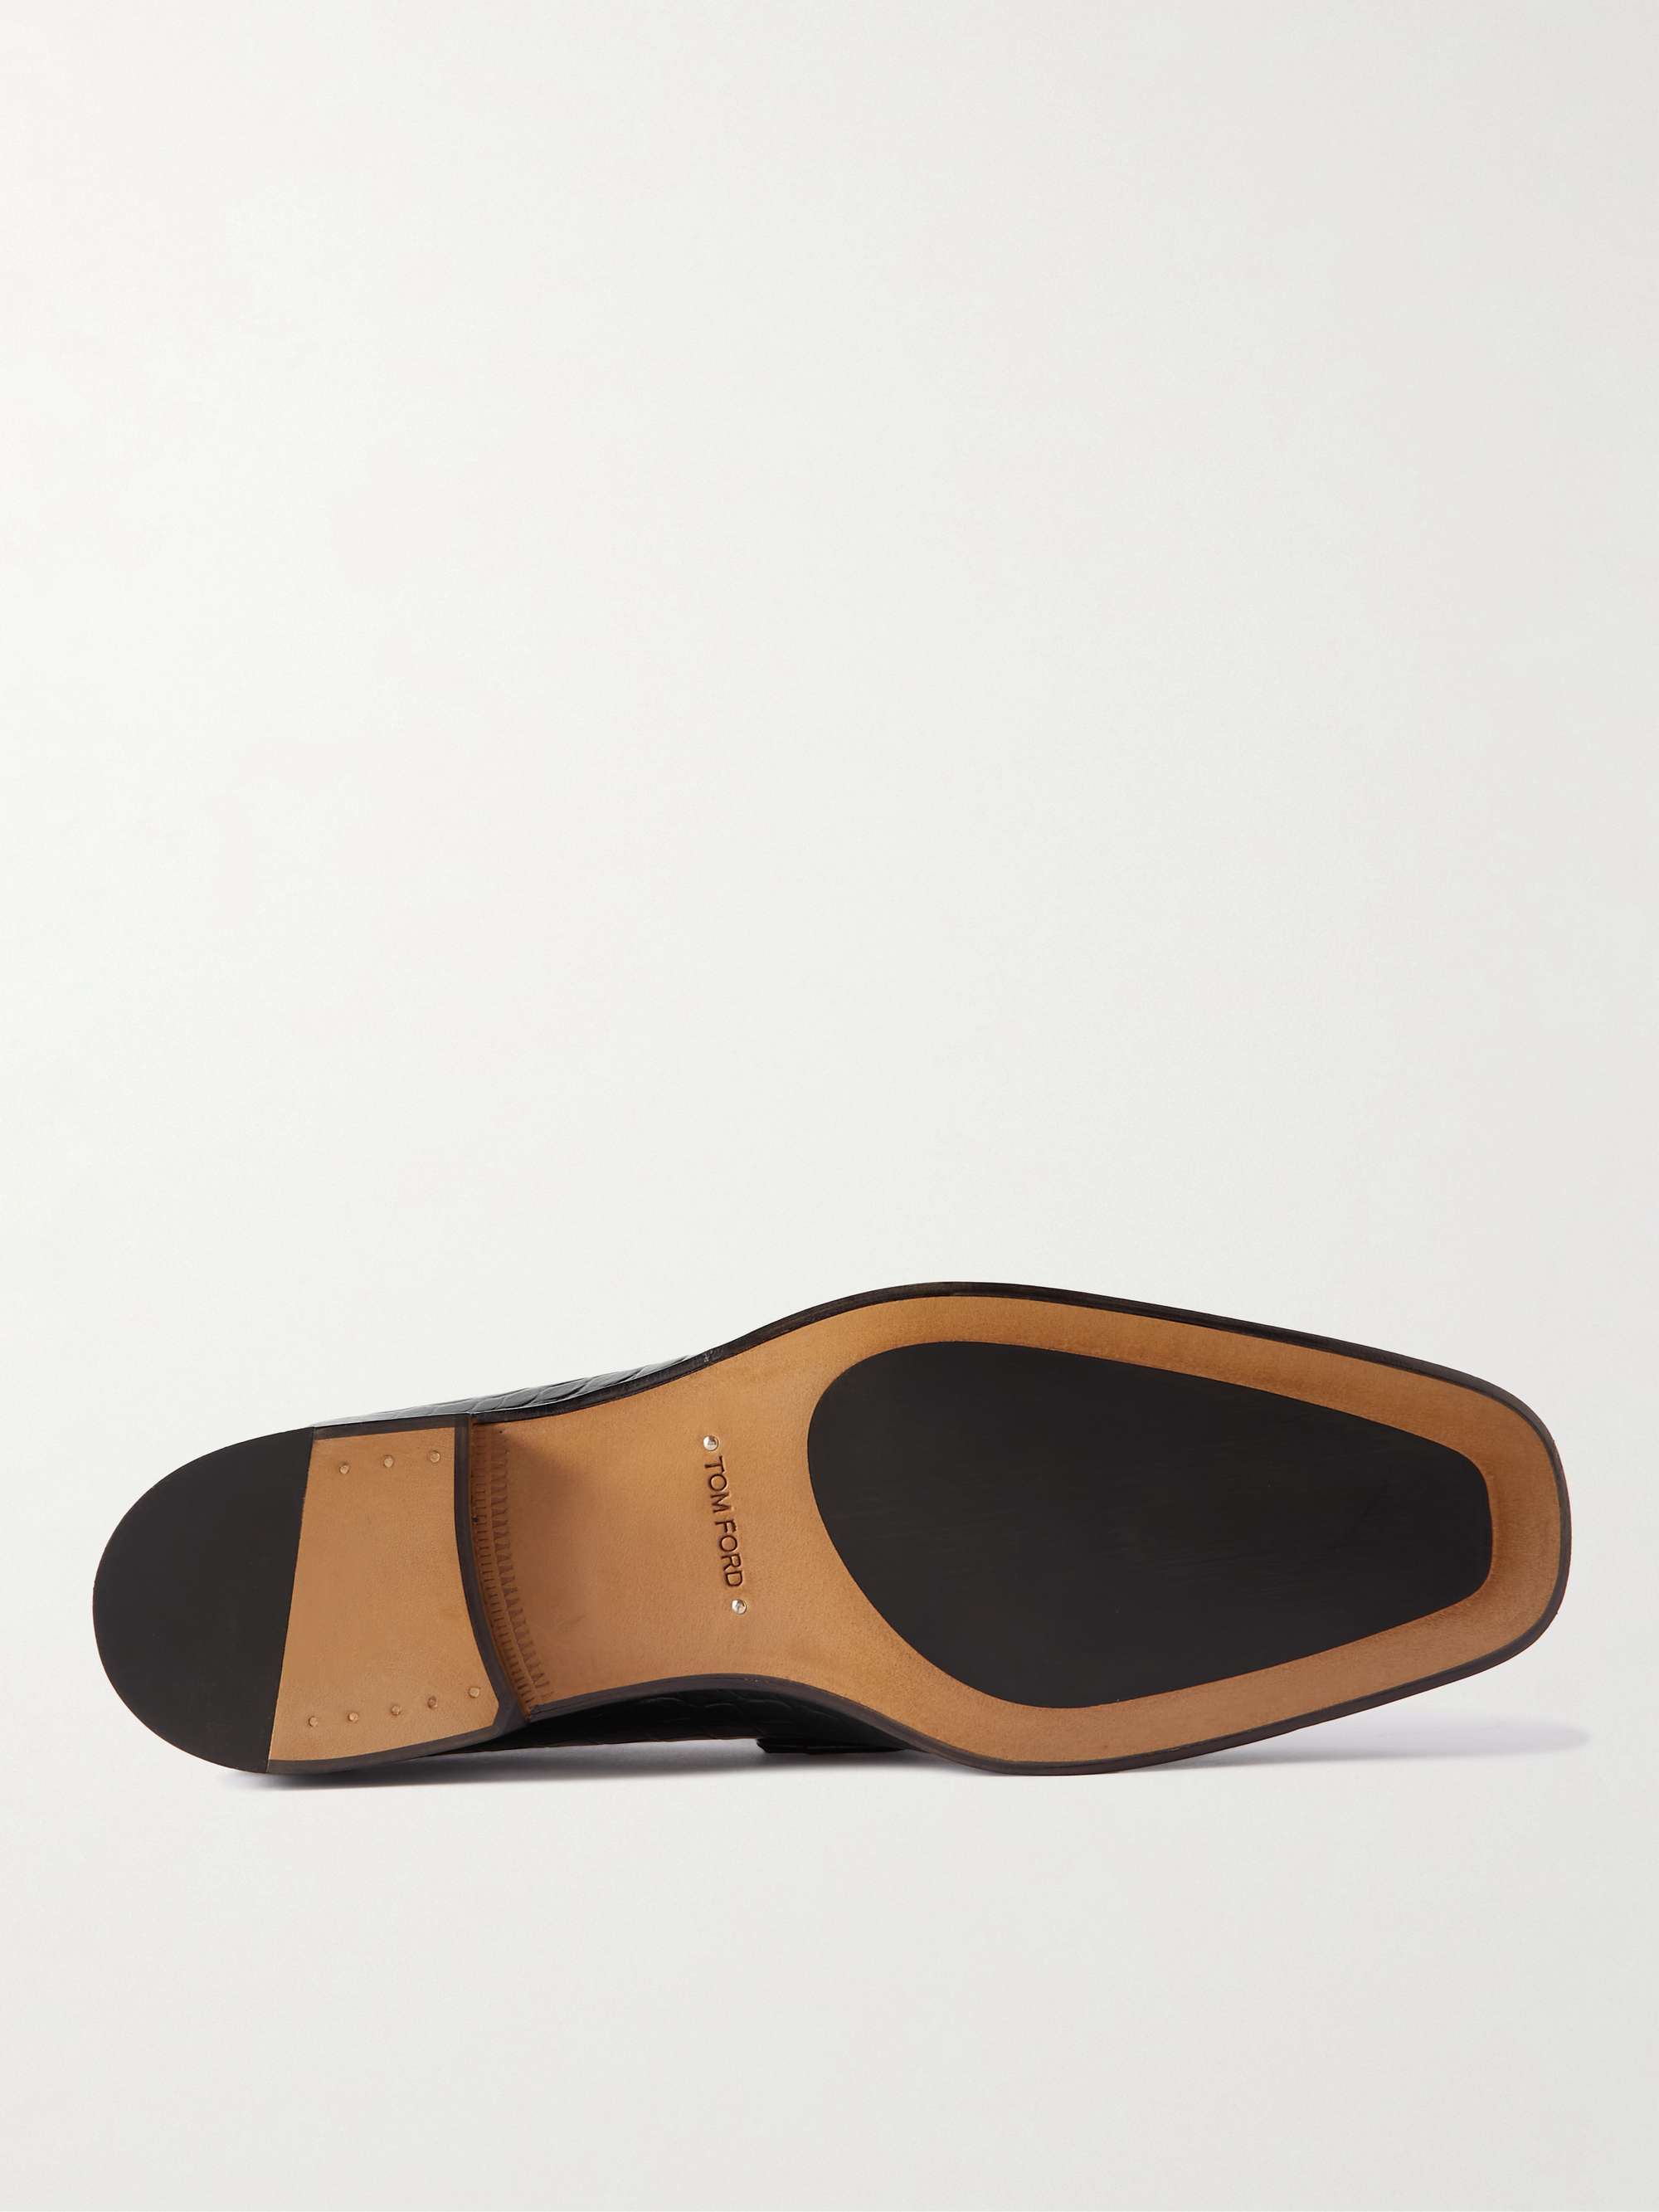 TOM FORD Bailey Embellished Croc-Effect Leather Loafers for Men | MR PORTER